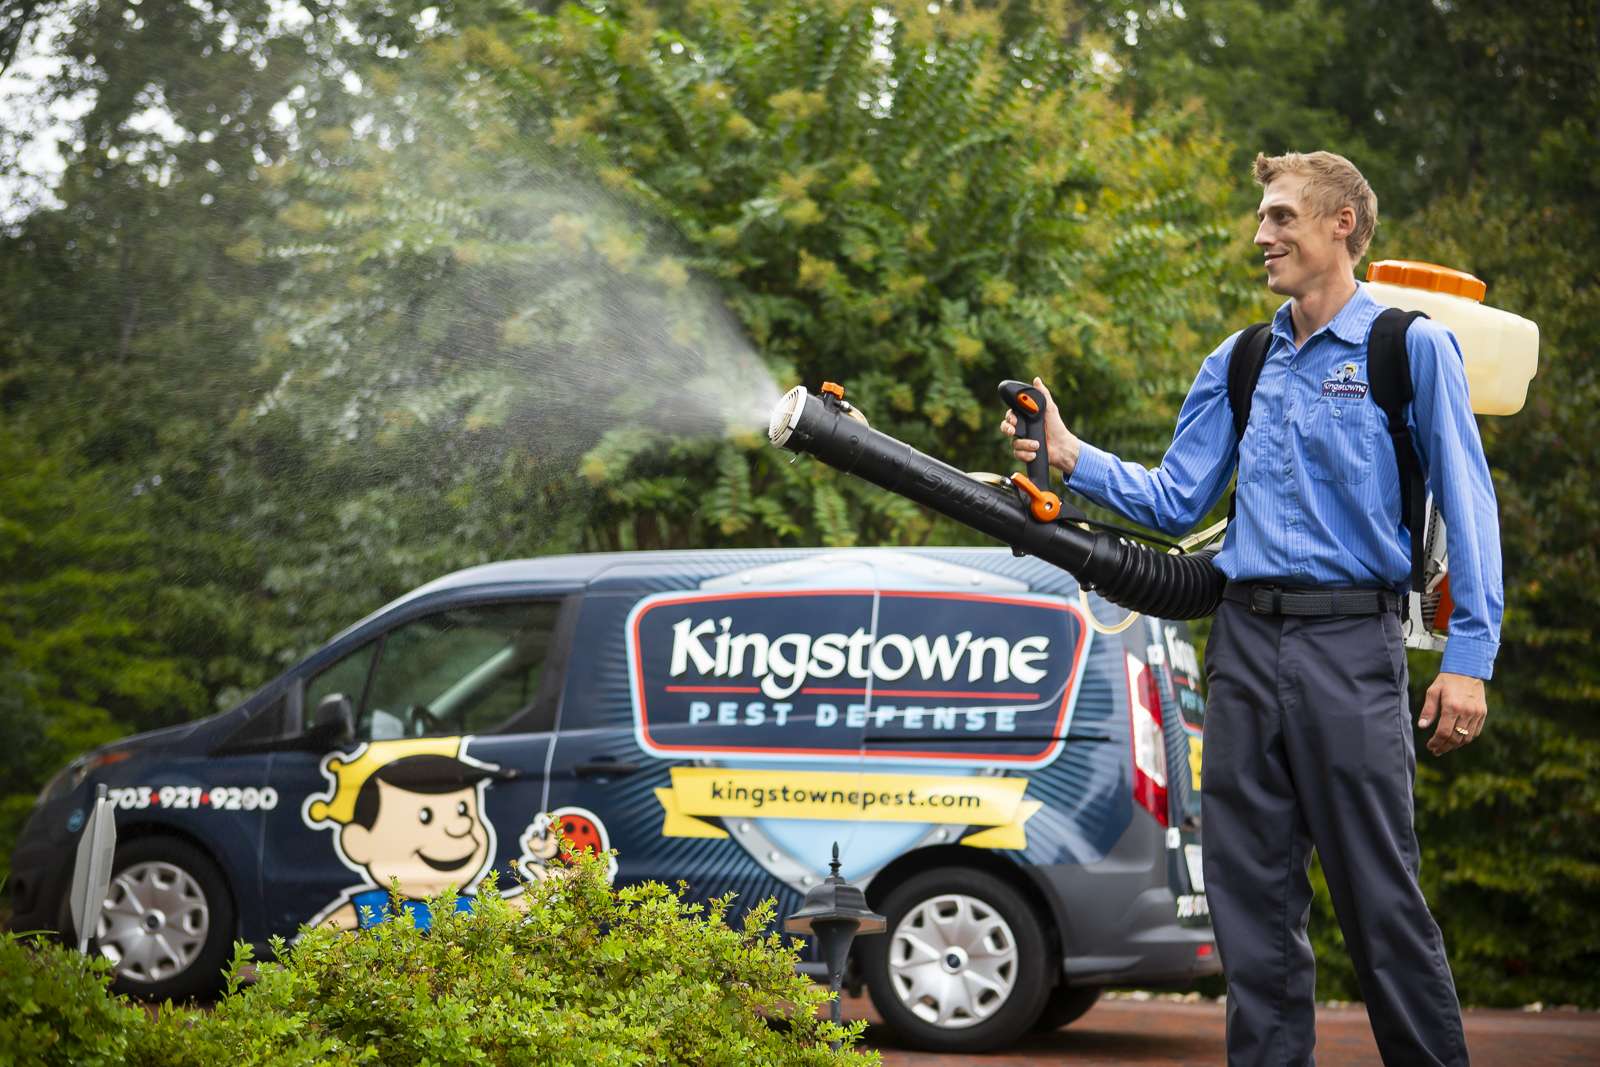 Grant Osvalds Kingstowne Pest Defense Manager